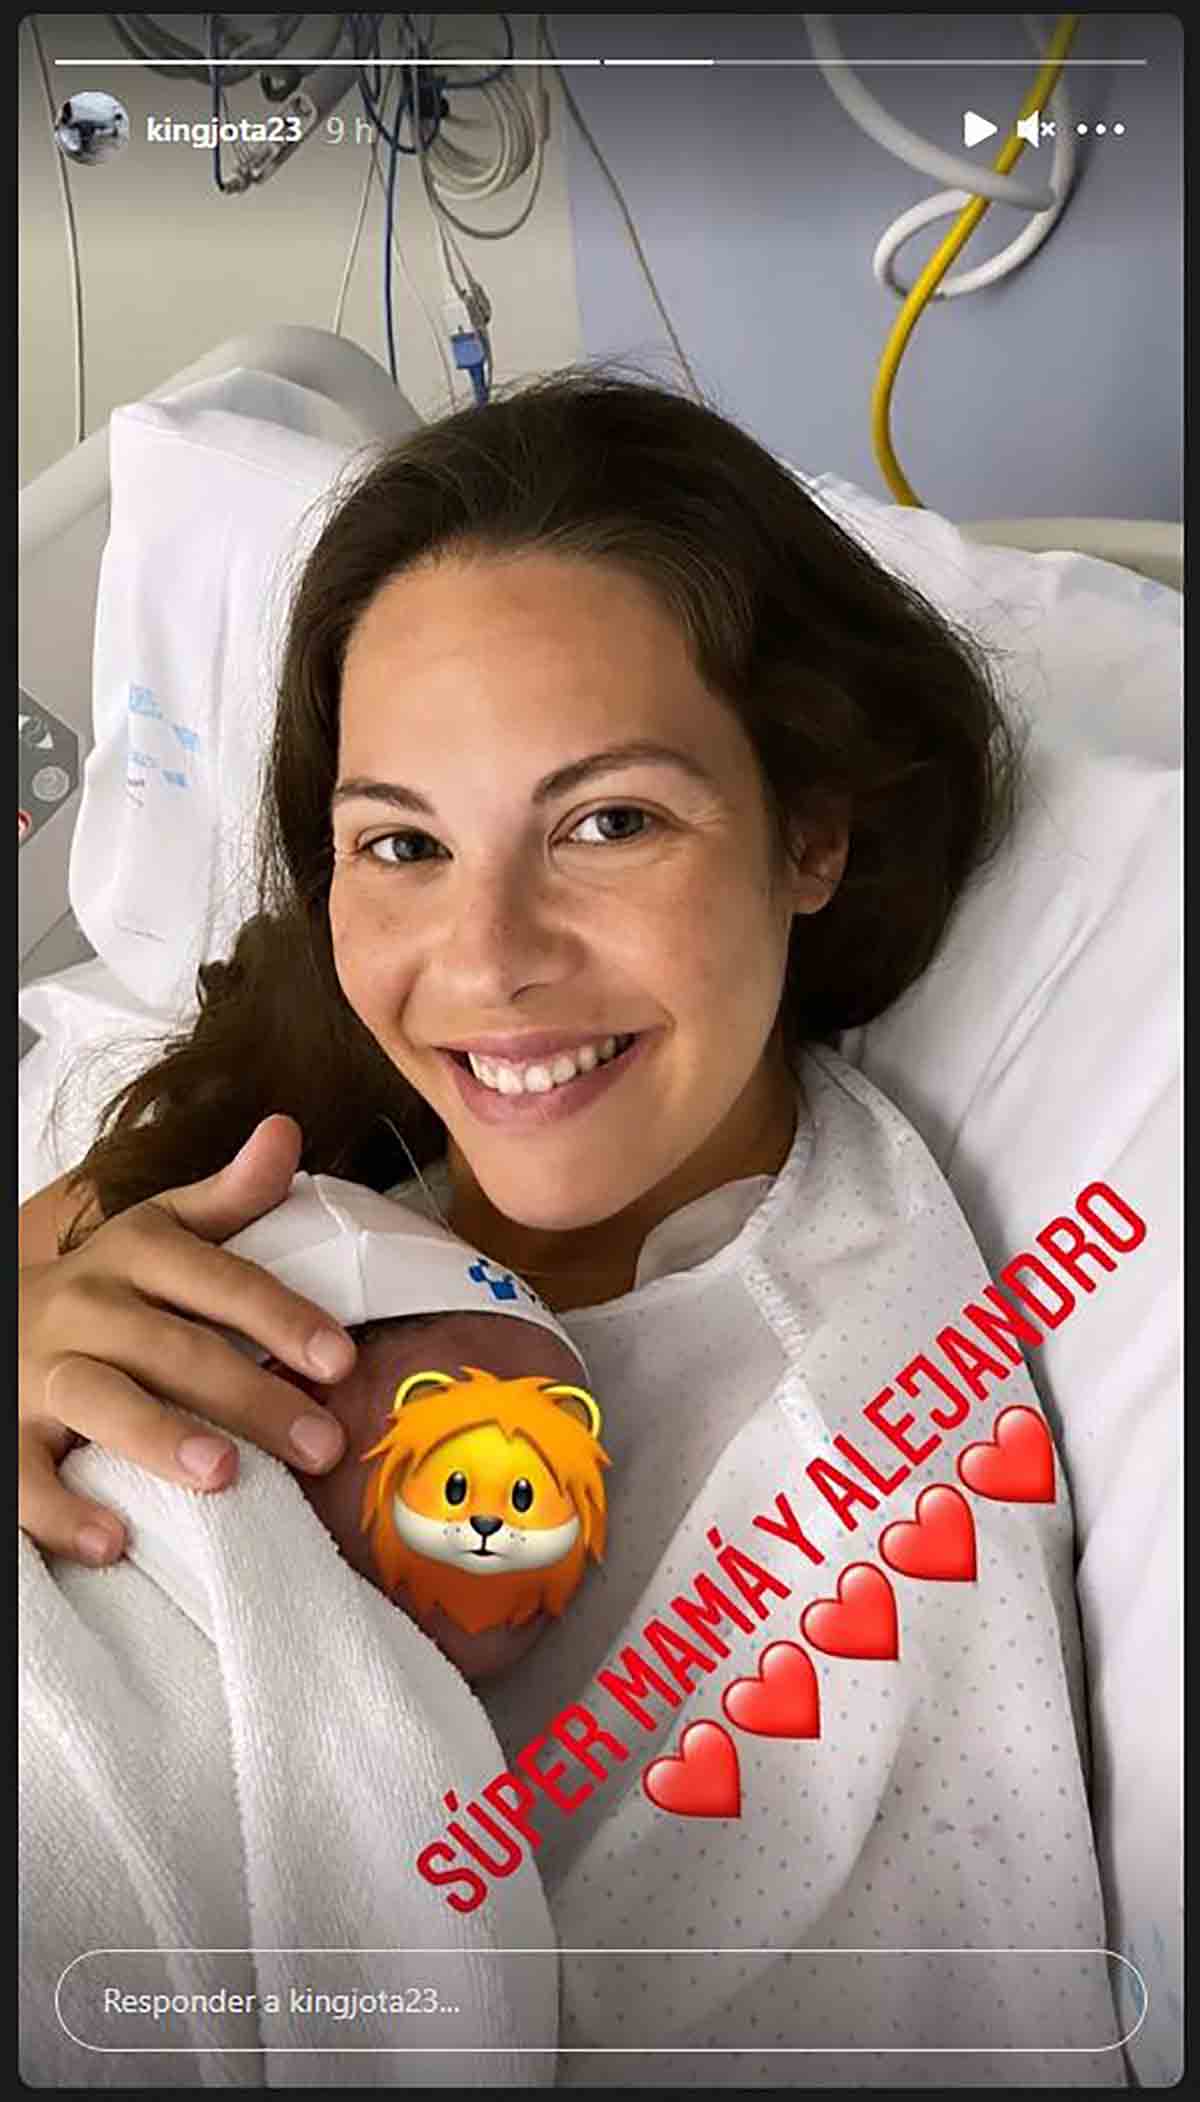 Jota Peleteiro ha sido el primero en anunciar la feliz noticia / Instagram